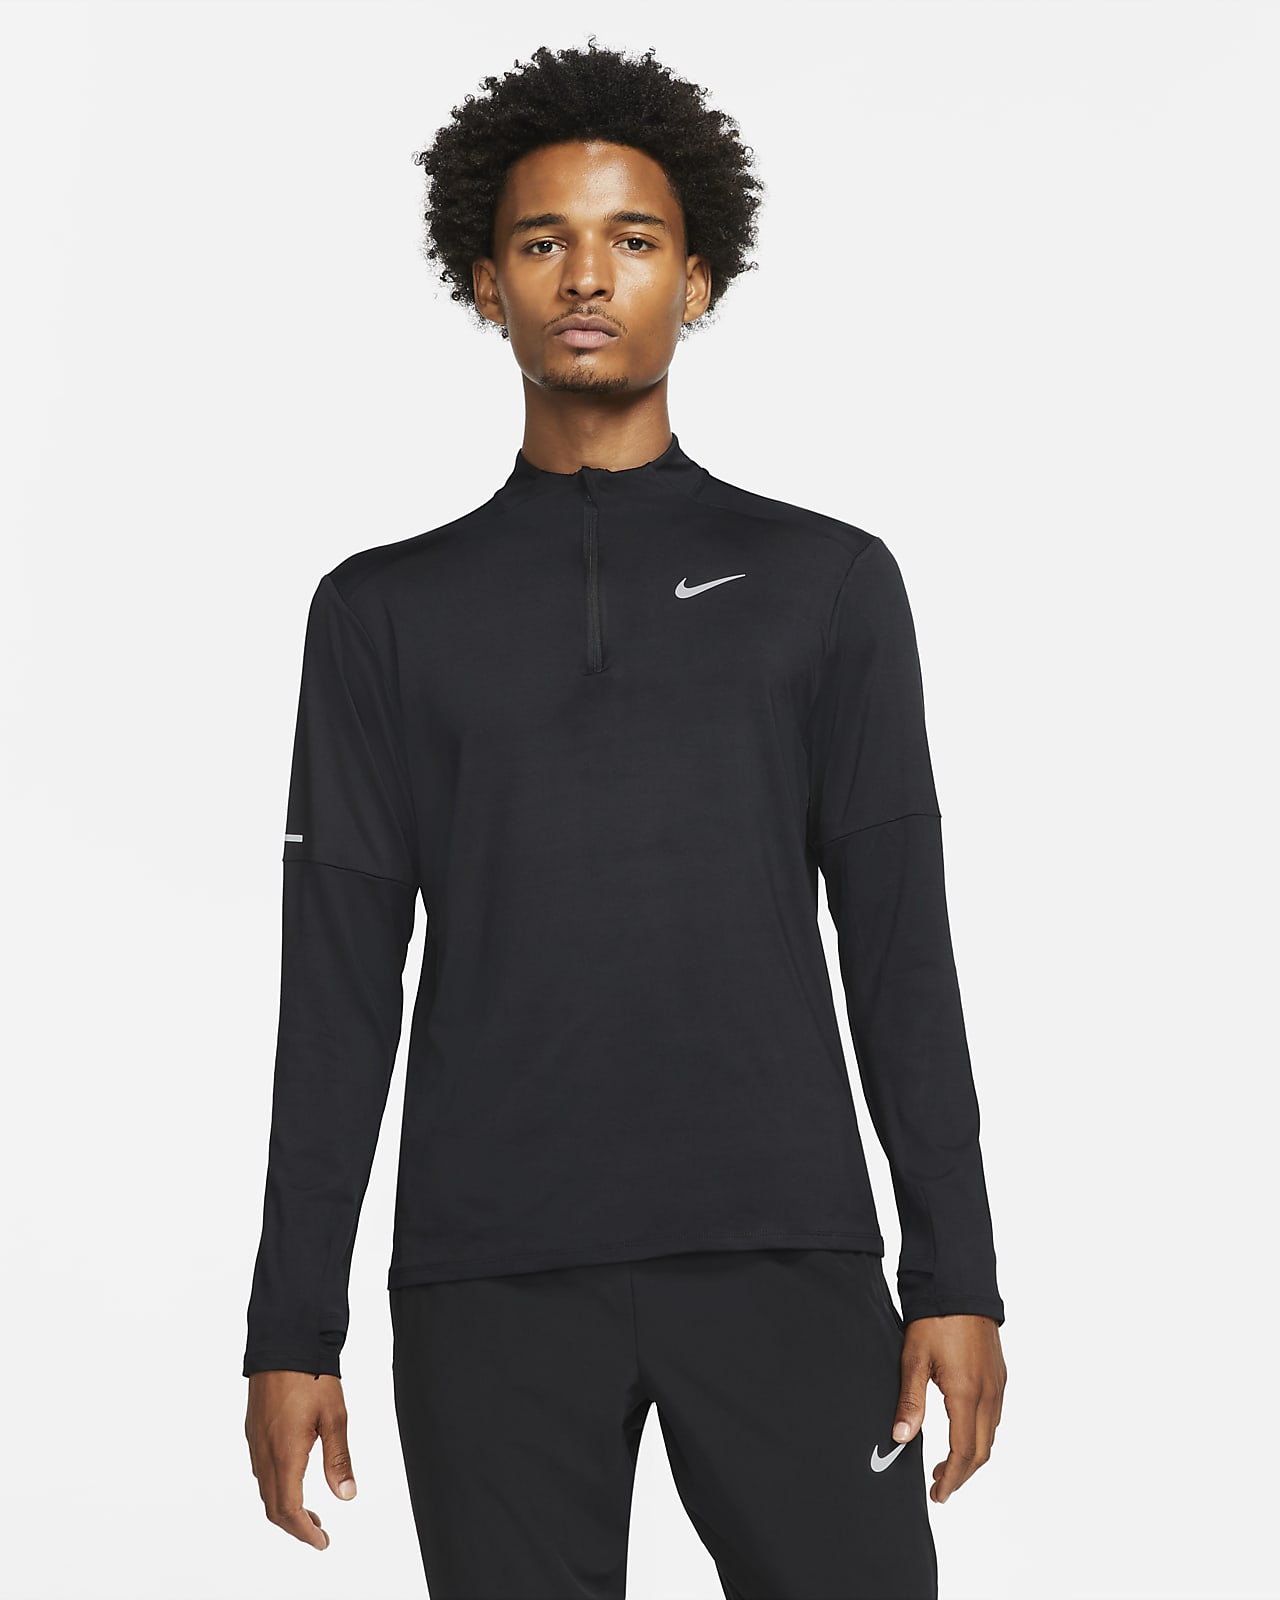 Pánské běžecké tričko Dri-FIT Nike Element do terénu s polovičním zipem